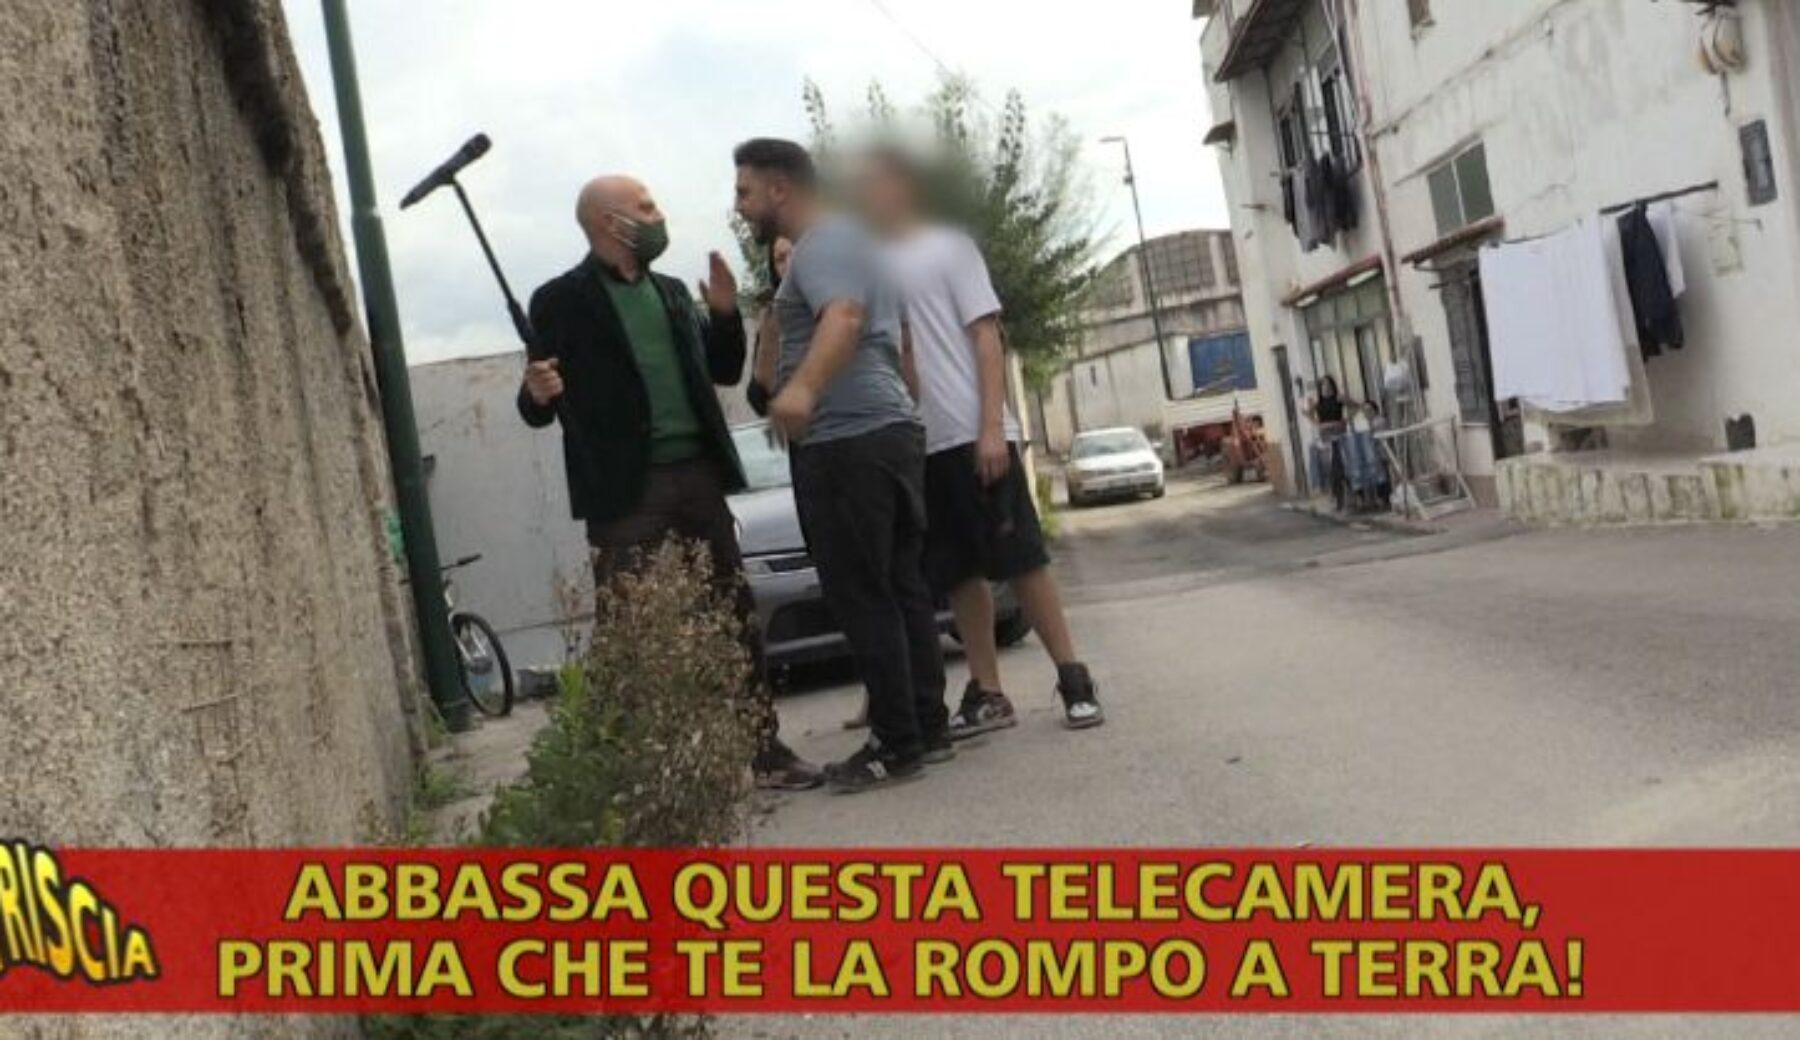 Luca Abete e il suo cameraman aggrediti a San Giovanni a Teduccio: documentavano un traffico illecito di auto